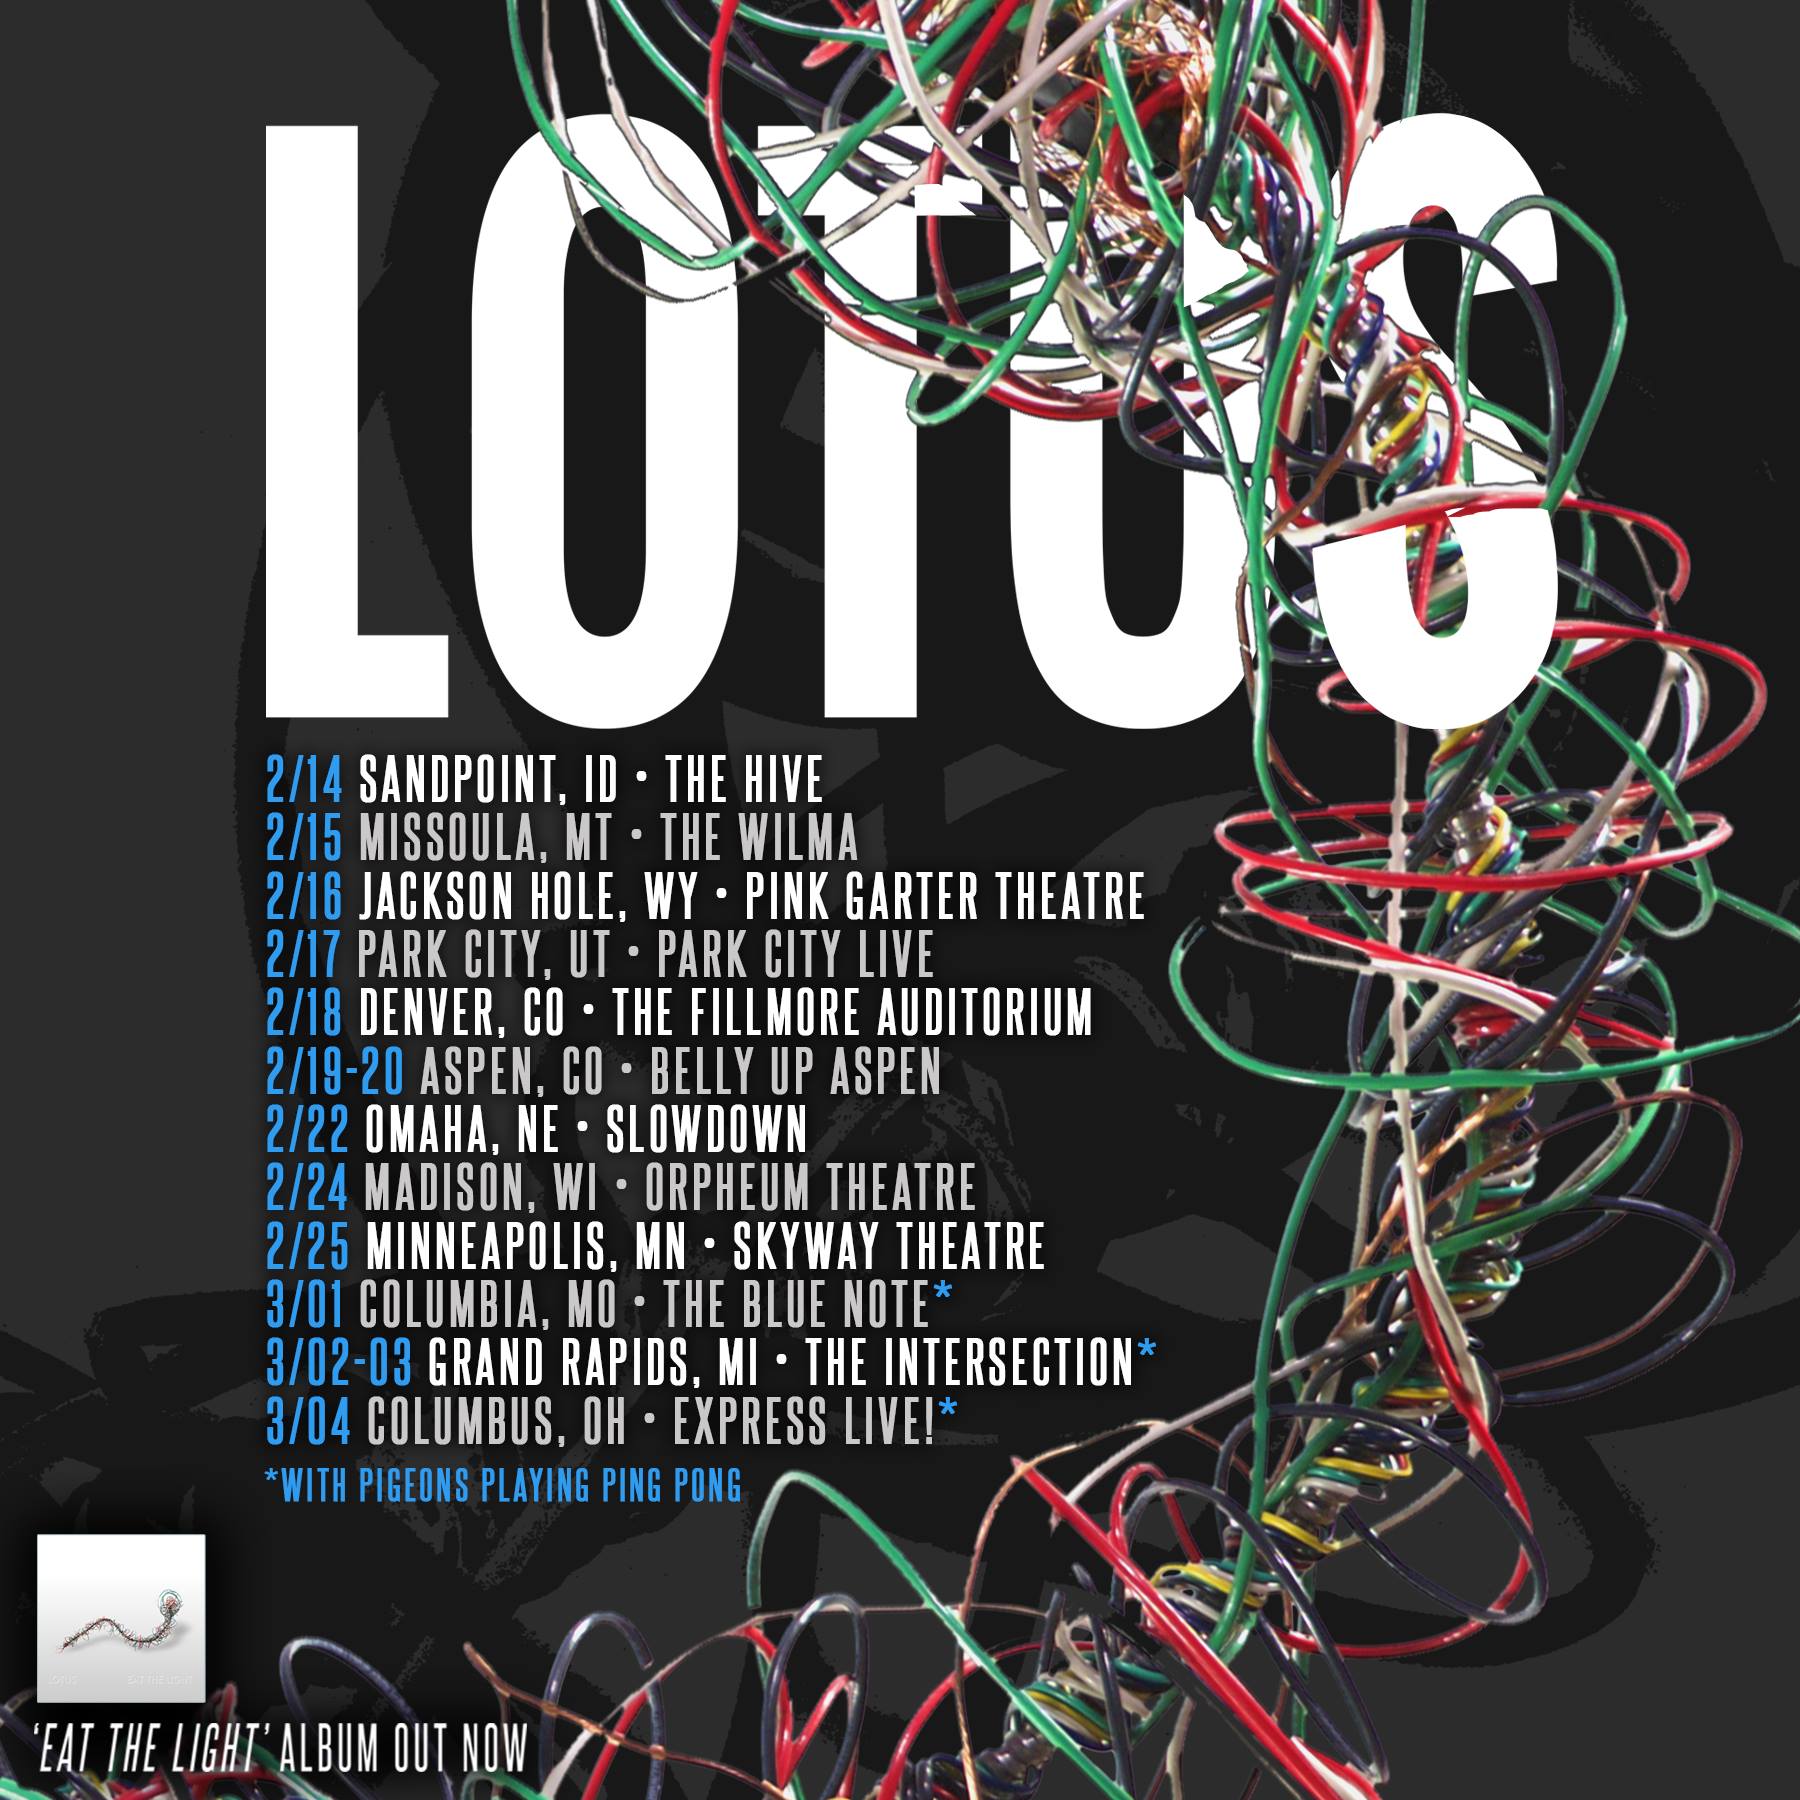 Lotus Announces More Tour Dates for 2017